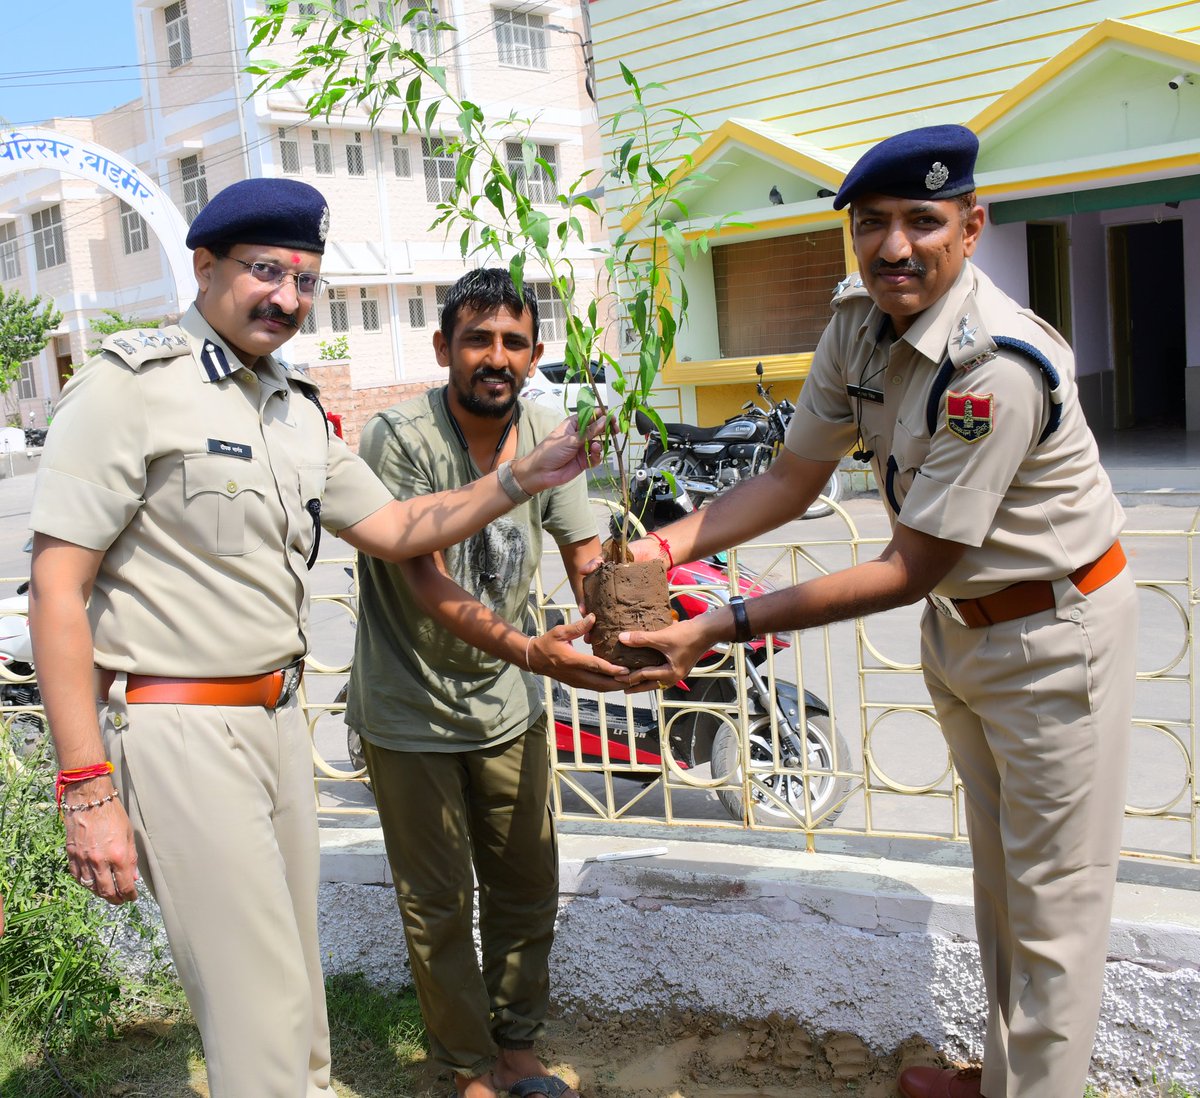 #Barmer जिला पुलिस अधीक्षक कार्यालय के आगे ग्रीनमैन नरपतसिंह राजपुरोहित के सहयोग से 120 पौधे लगाए, पुलिस अधीक्षक दीपक भार्गव, अतिरिक्त पुलिस अधीक्षक नरपतसिंह, सीजेएम सुरेश नामा एवं पुलिस के जवानों ने किया पौधारोपण @Igp_Jodhpur @RajPoliceHelp